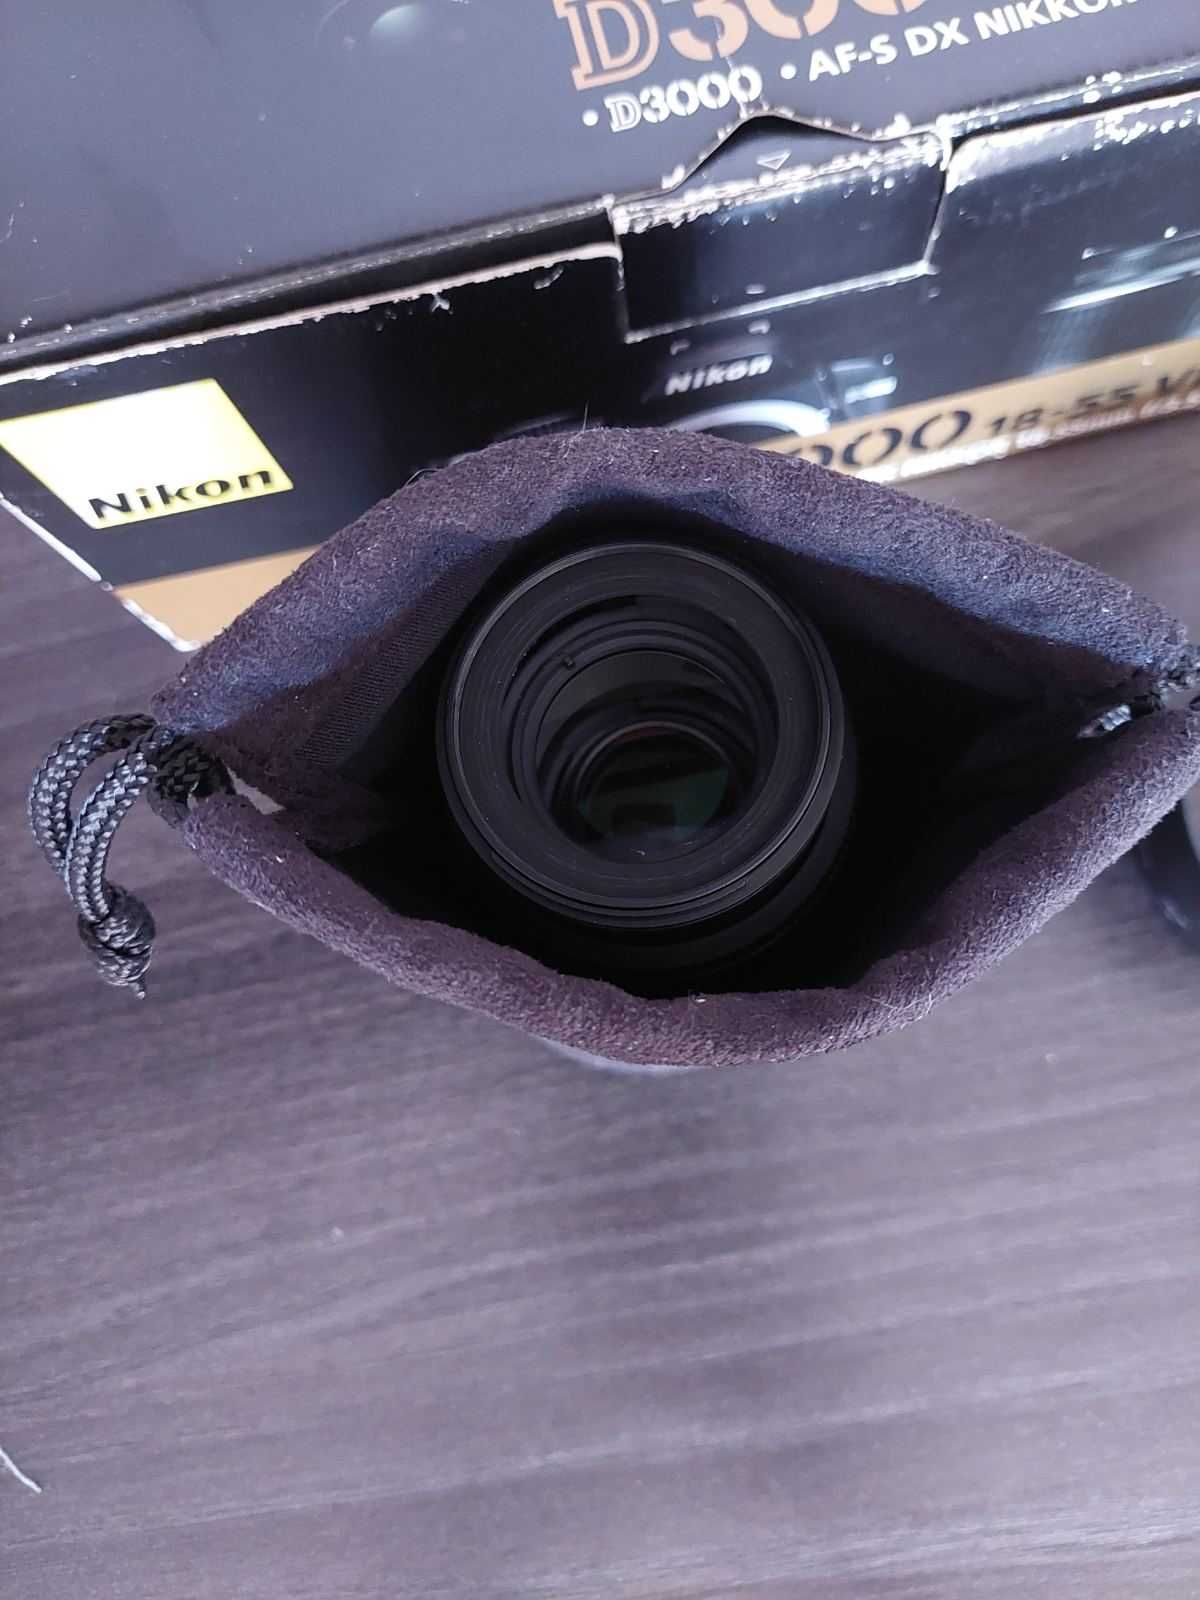 Nikon D3000 AF-S DX VR Zoom-Nikkor 55-200mm f/4-5.6G IF-ED